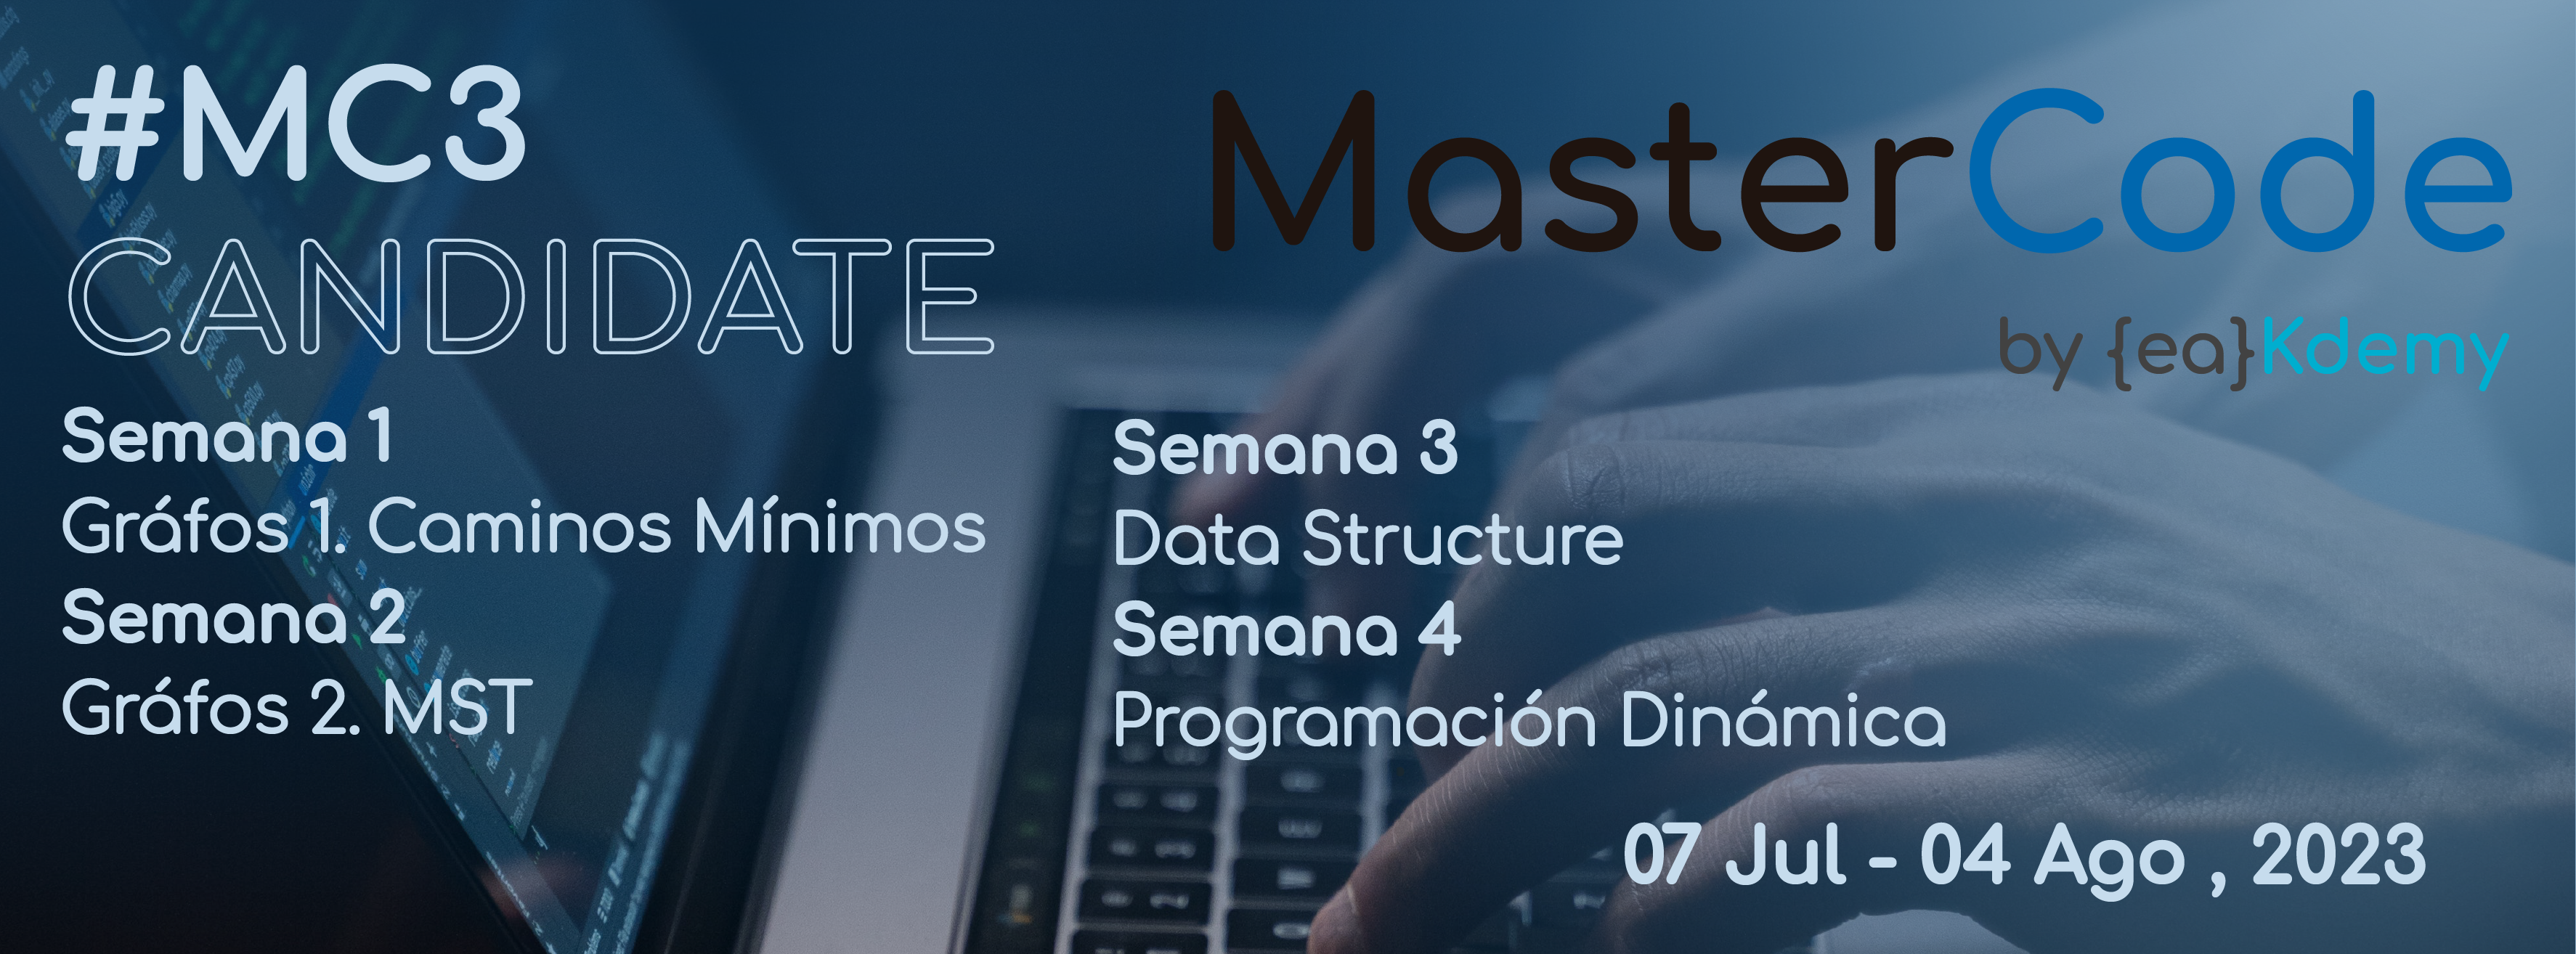 MasterCode3 (División Candidate 07Jul-04Ago)